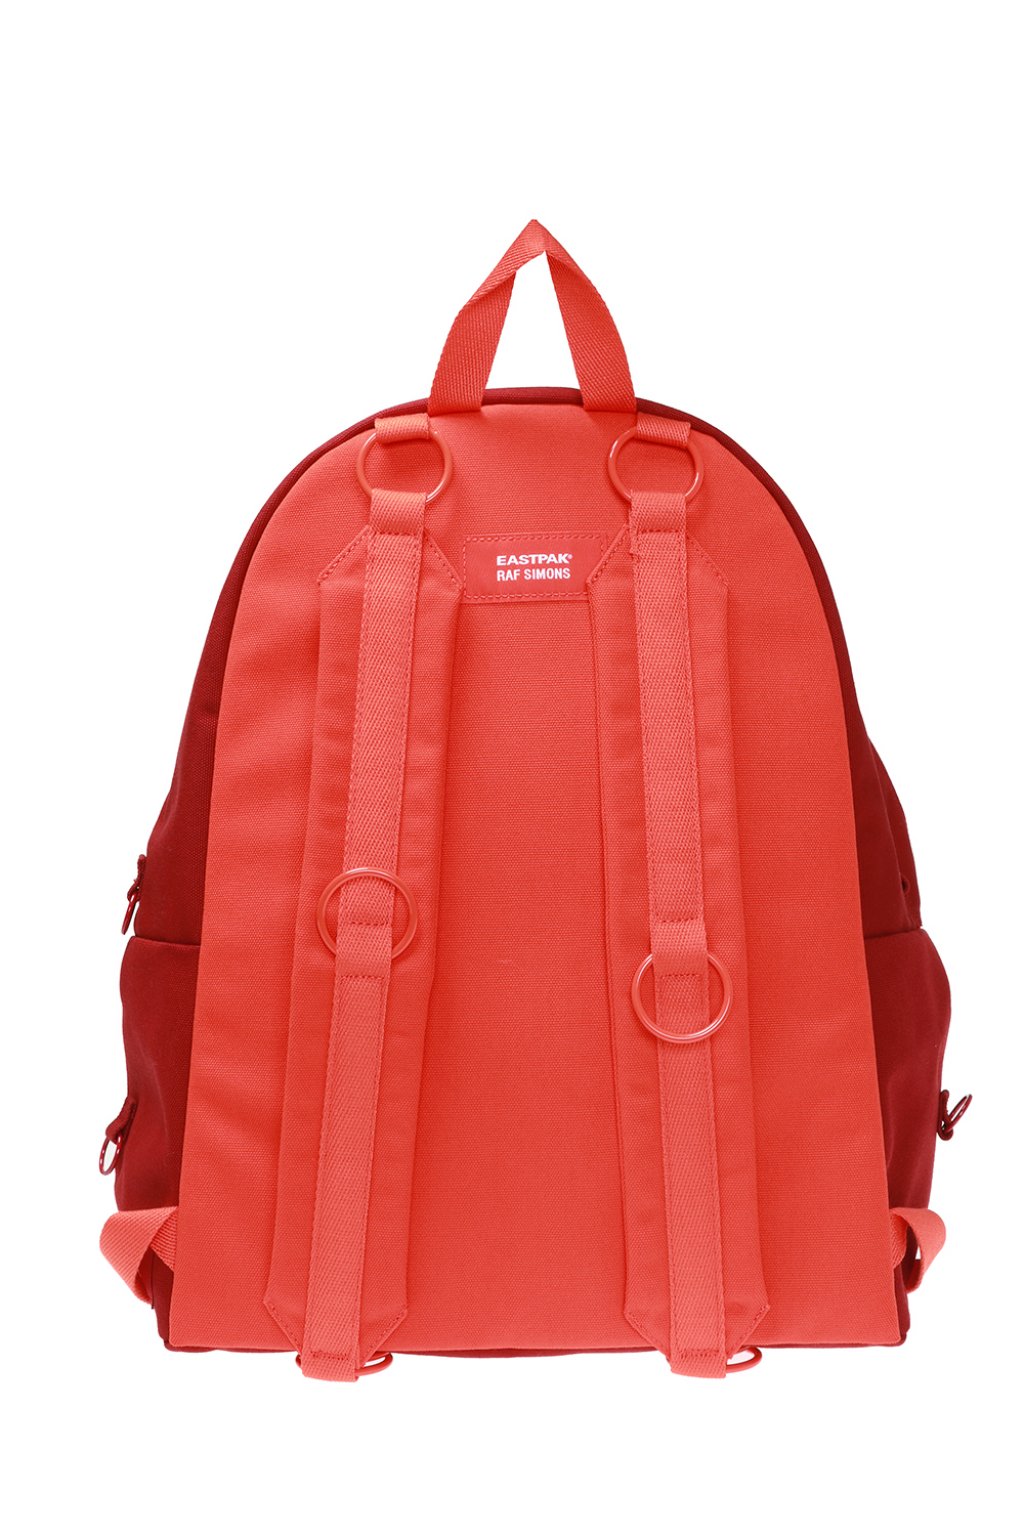 Eastpak x Raf Simons Female Backpack